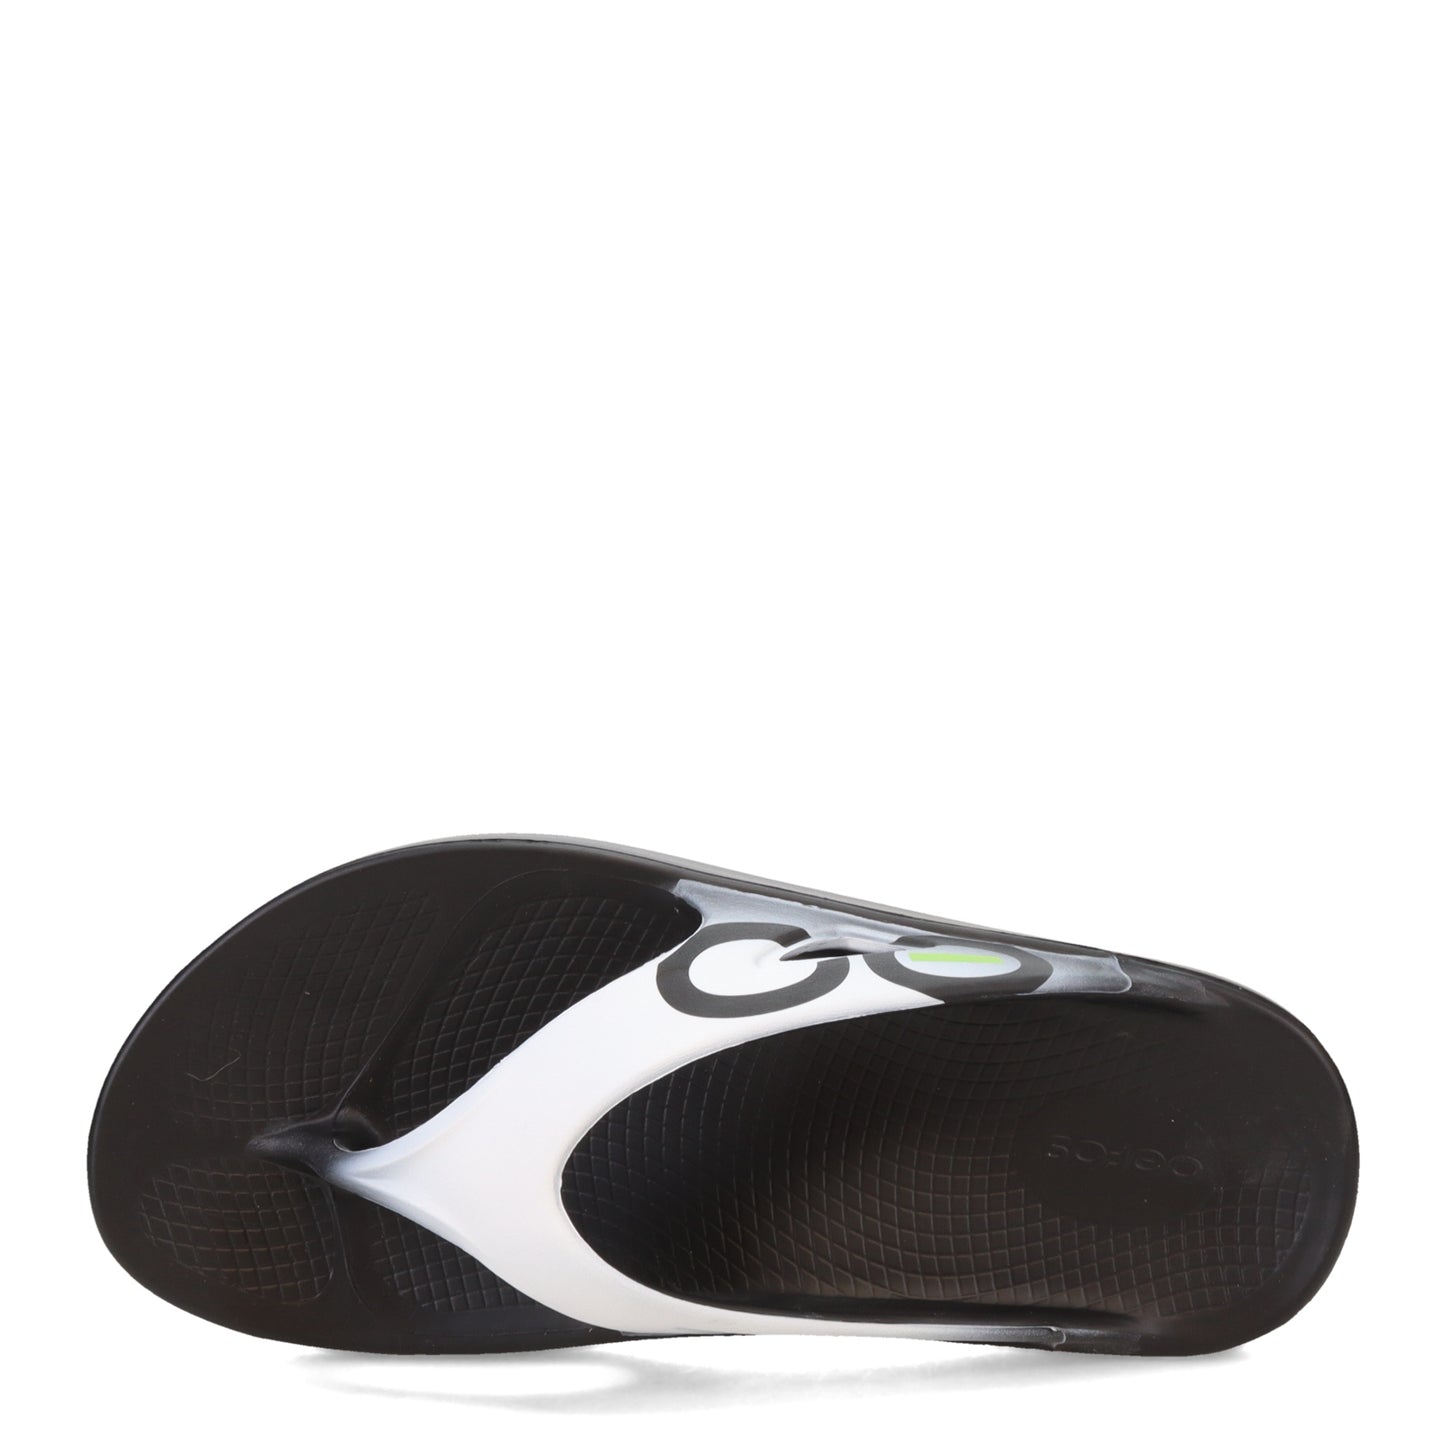 Peltz Shoes  Unisex Oofos Ooriginal Sandal BLACK WHITE 1001-BLACK CLOU